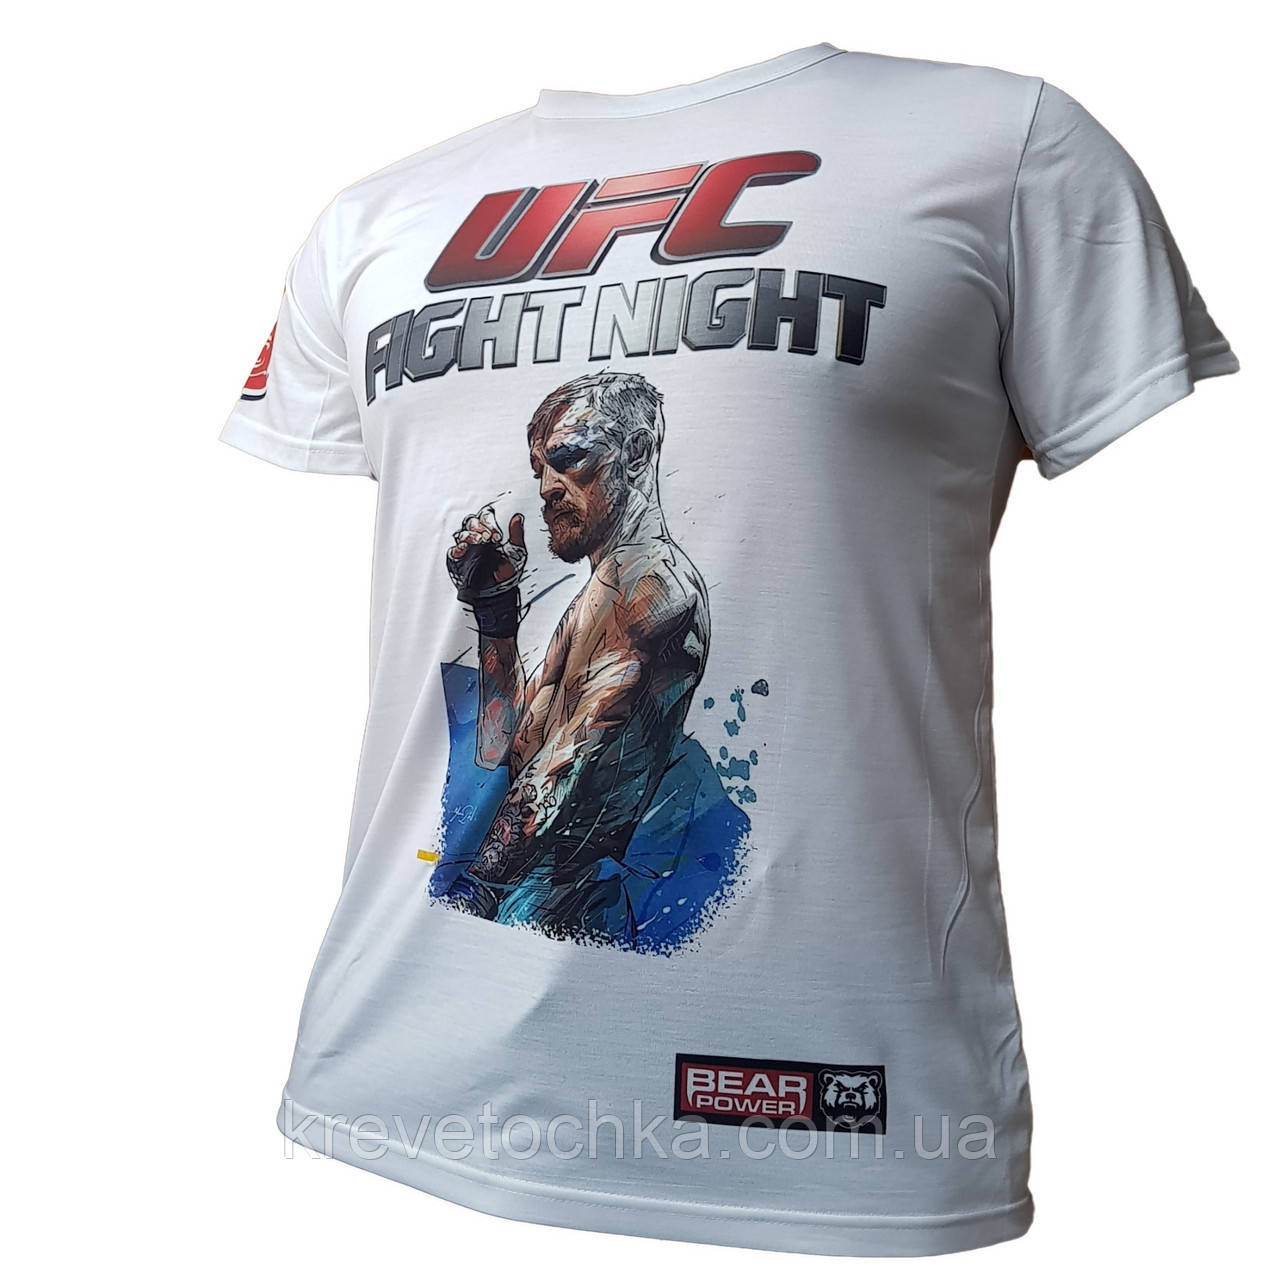 Спортивна футболка Venum "Challenger" T-shirt MMA Ufc